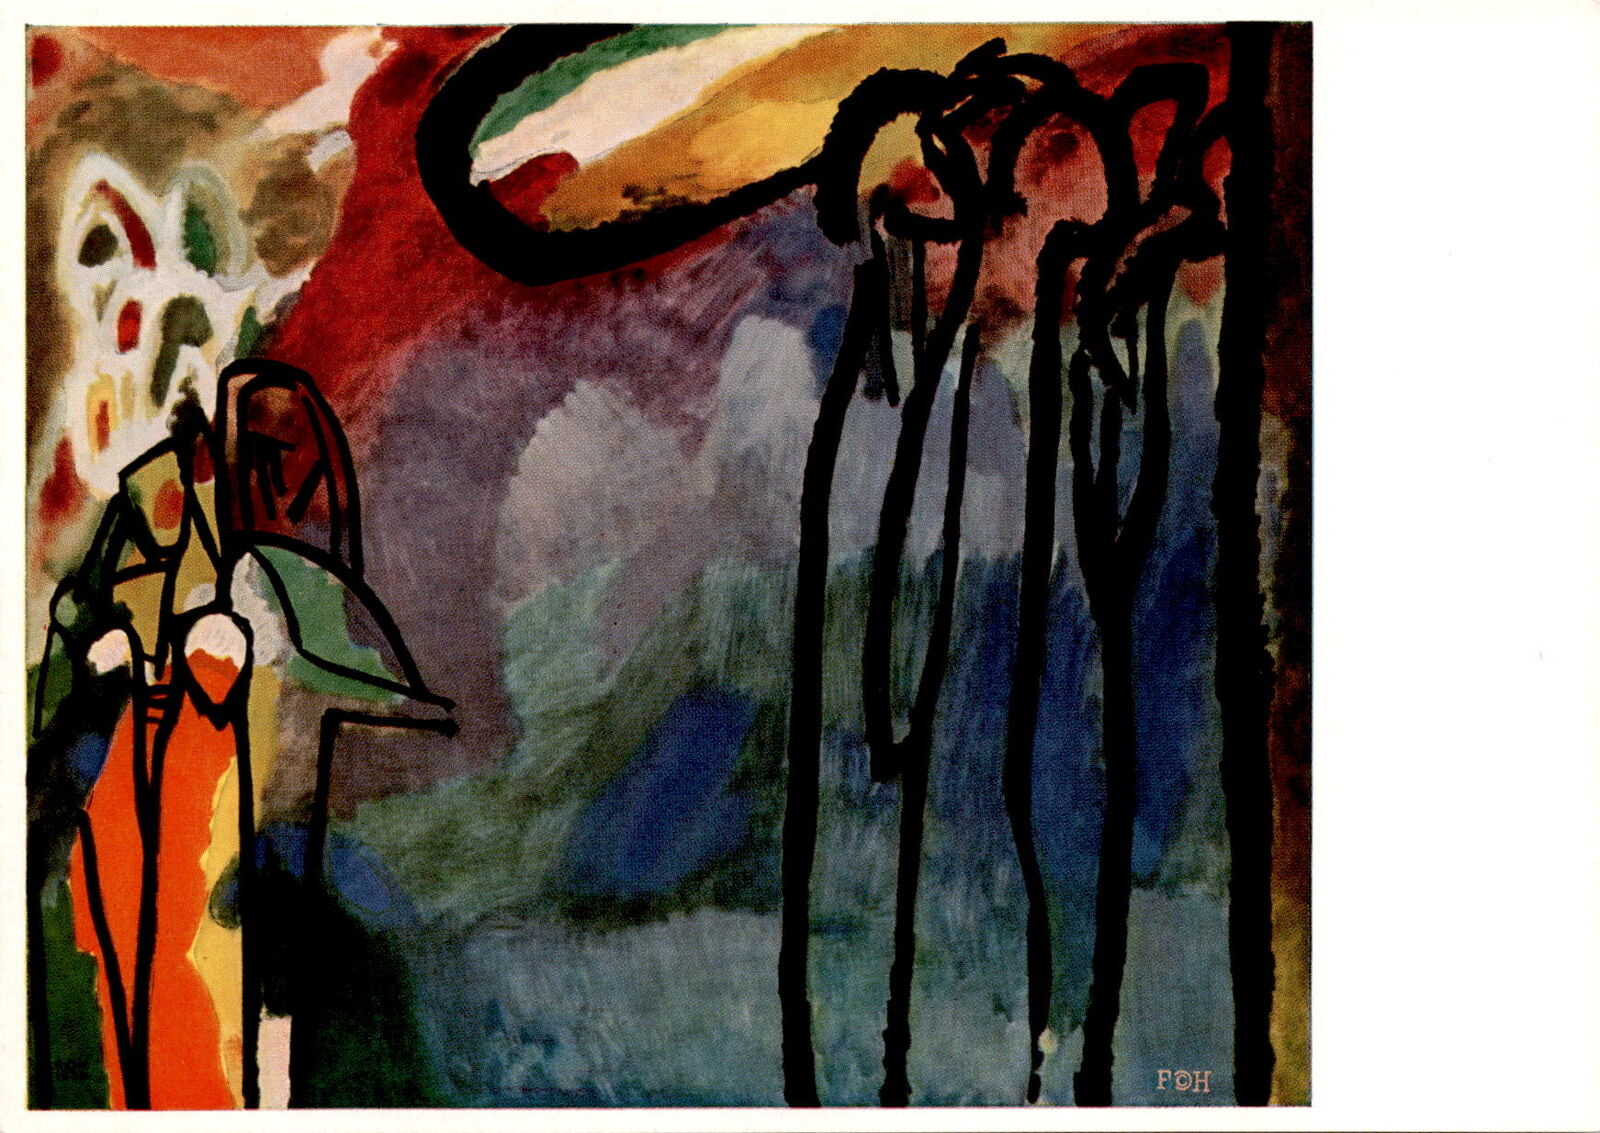 Wassily Kandinsky, Städtische Galerie München, Hanfstaengl- Postcard